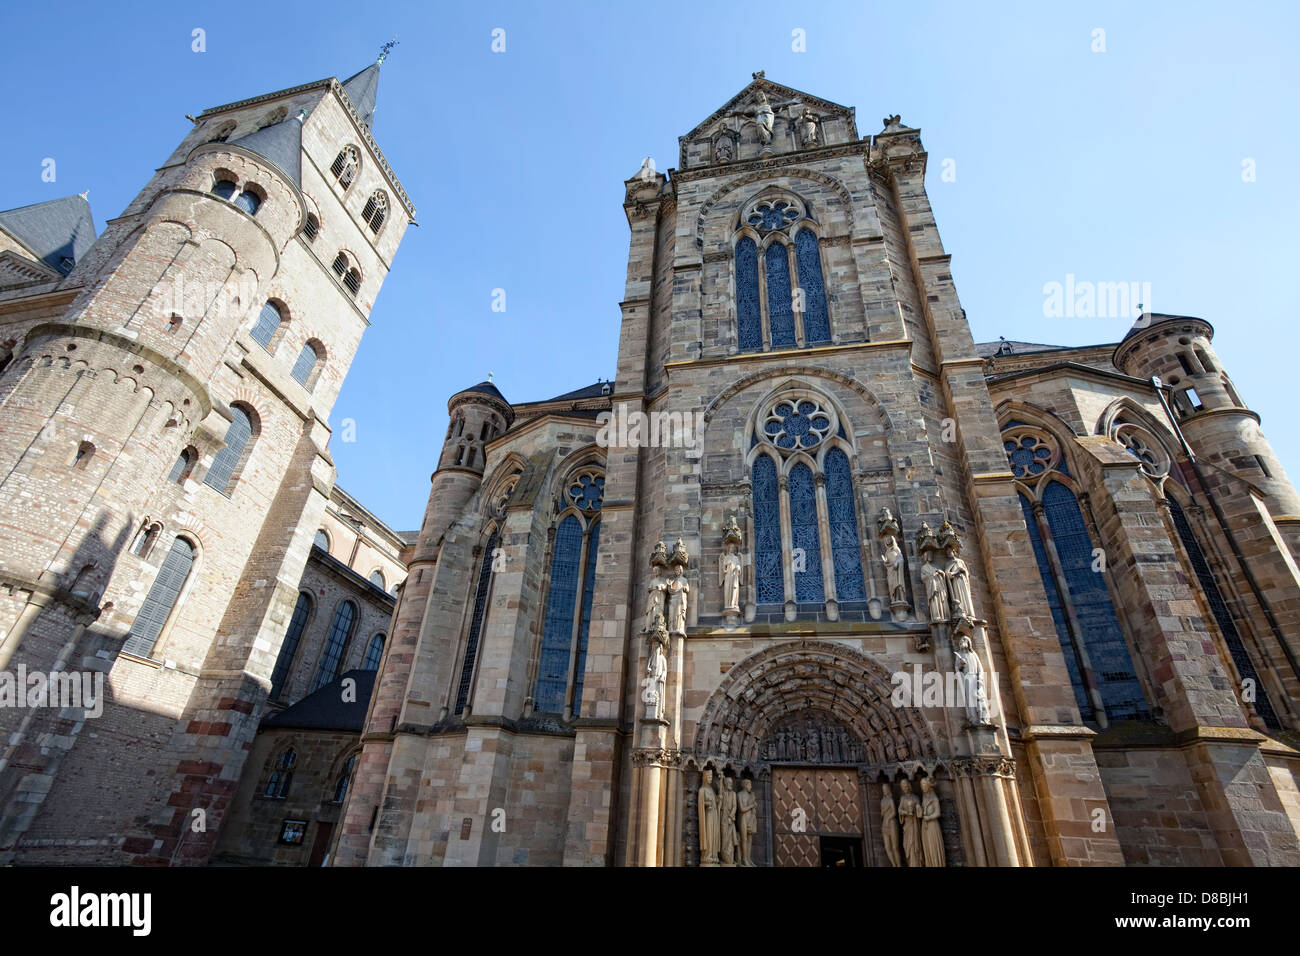 Église de Notre-Dame, cathédrale de Trèves, Trèves, Rhénanie-Palatinat, Allemagne, Europe Banque D'Images